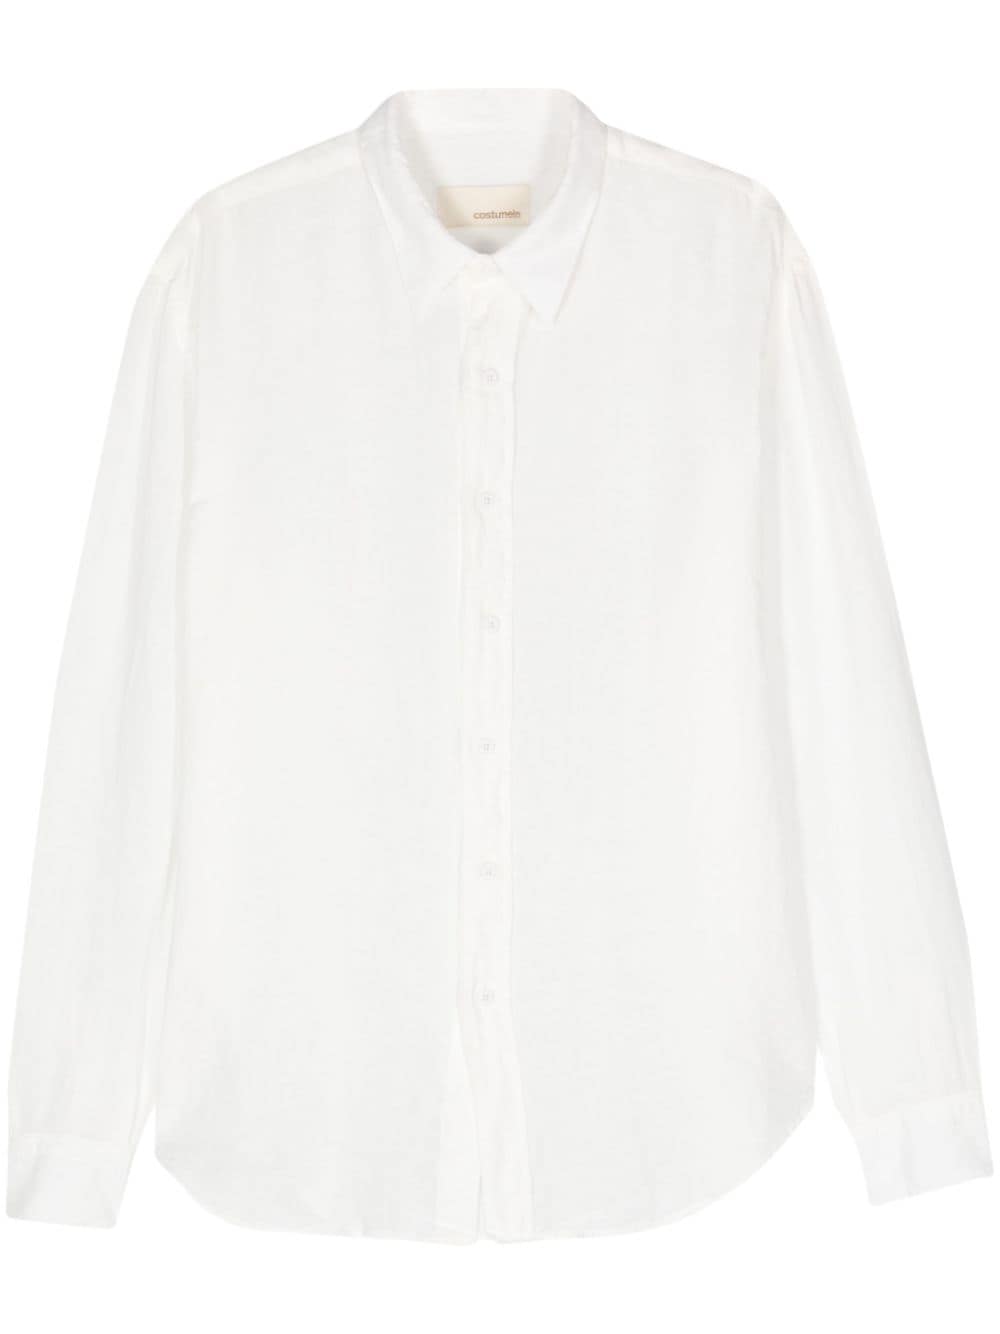 Costumein long-sleeve linen shirt - White von Costumein